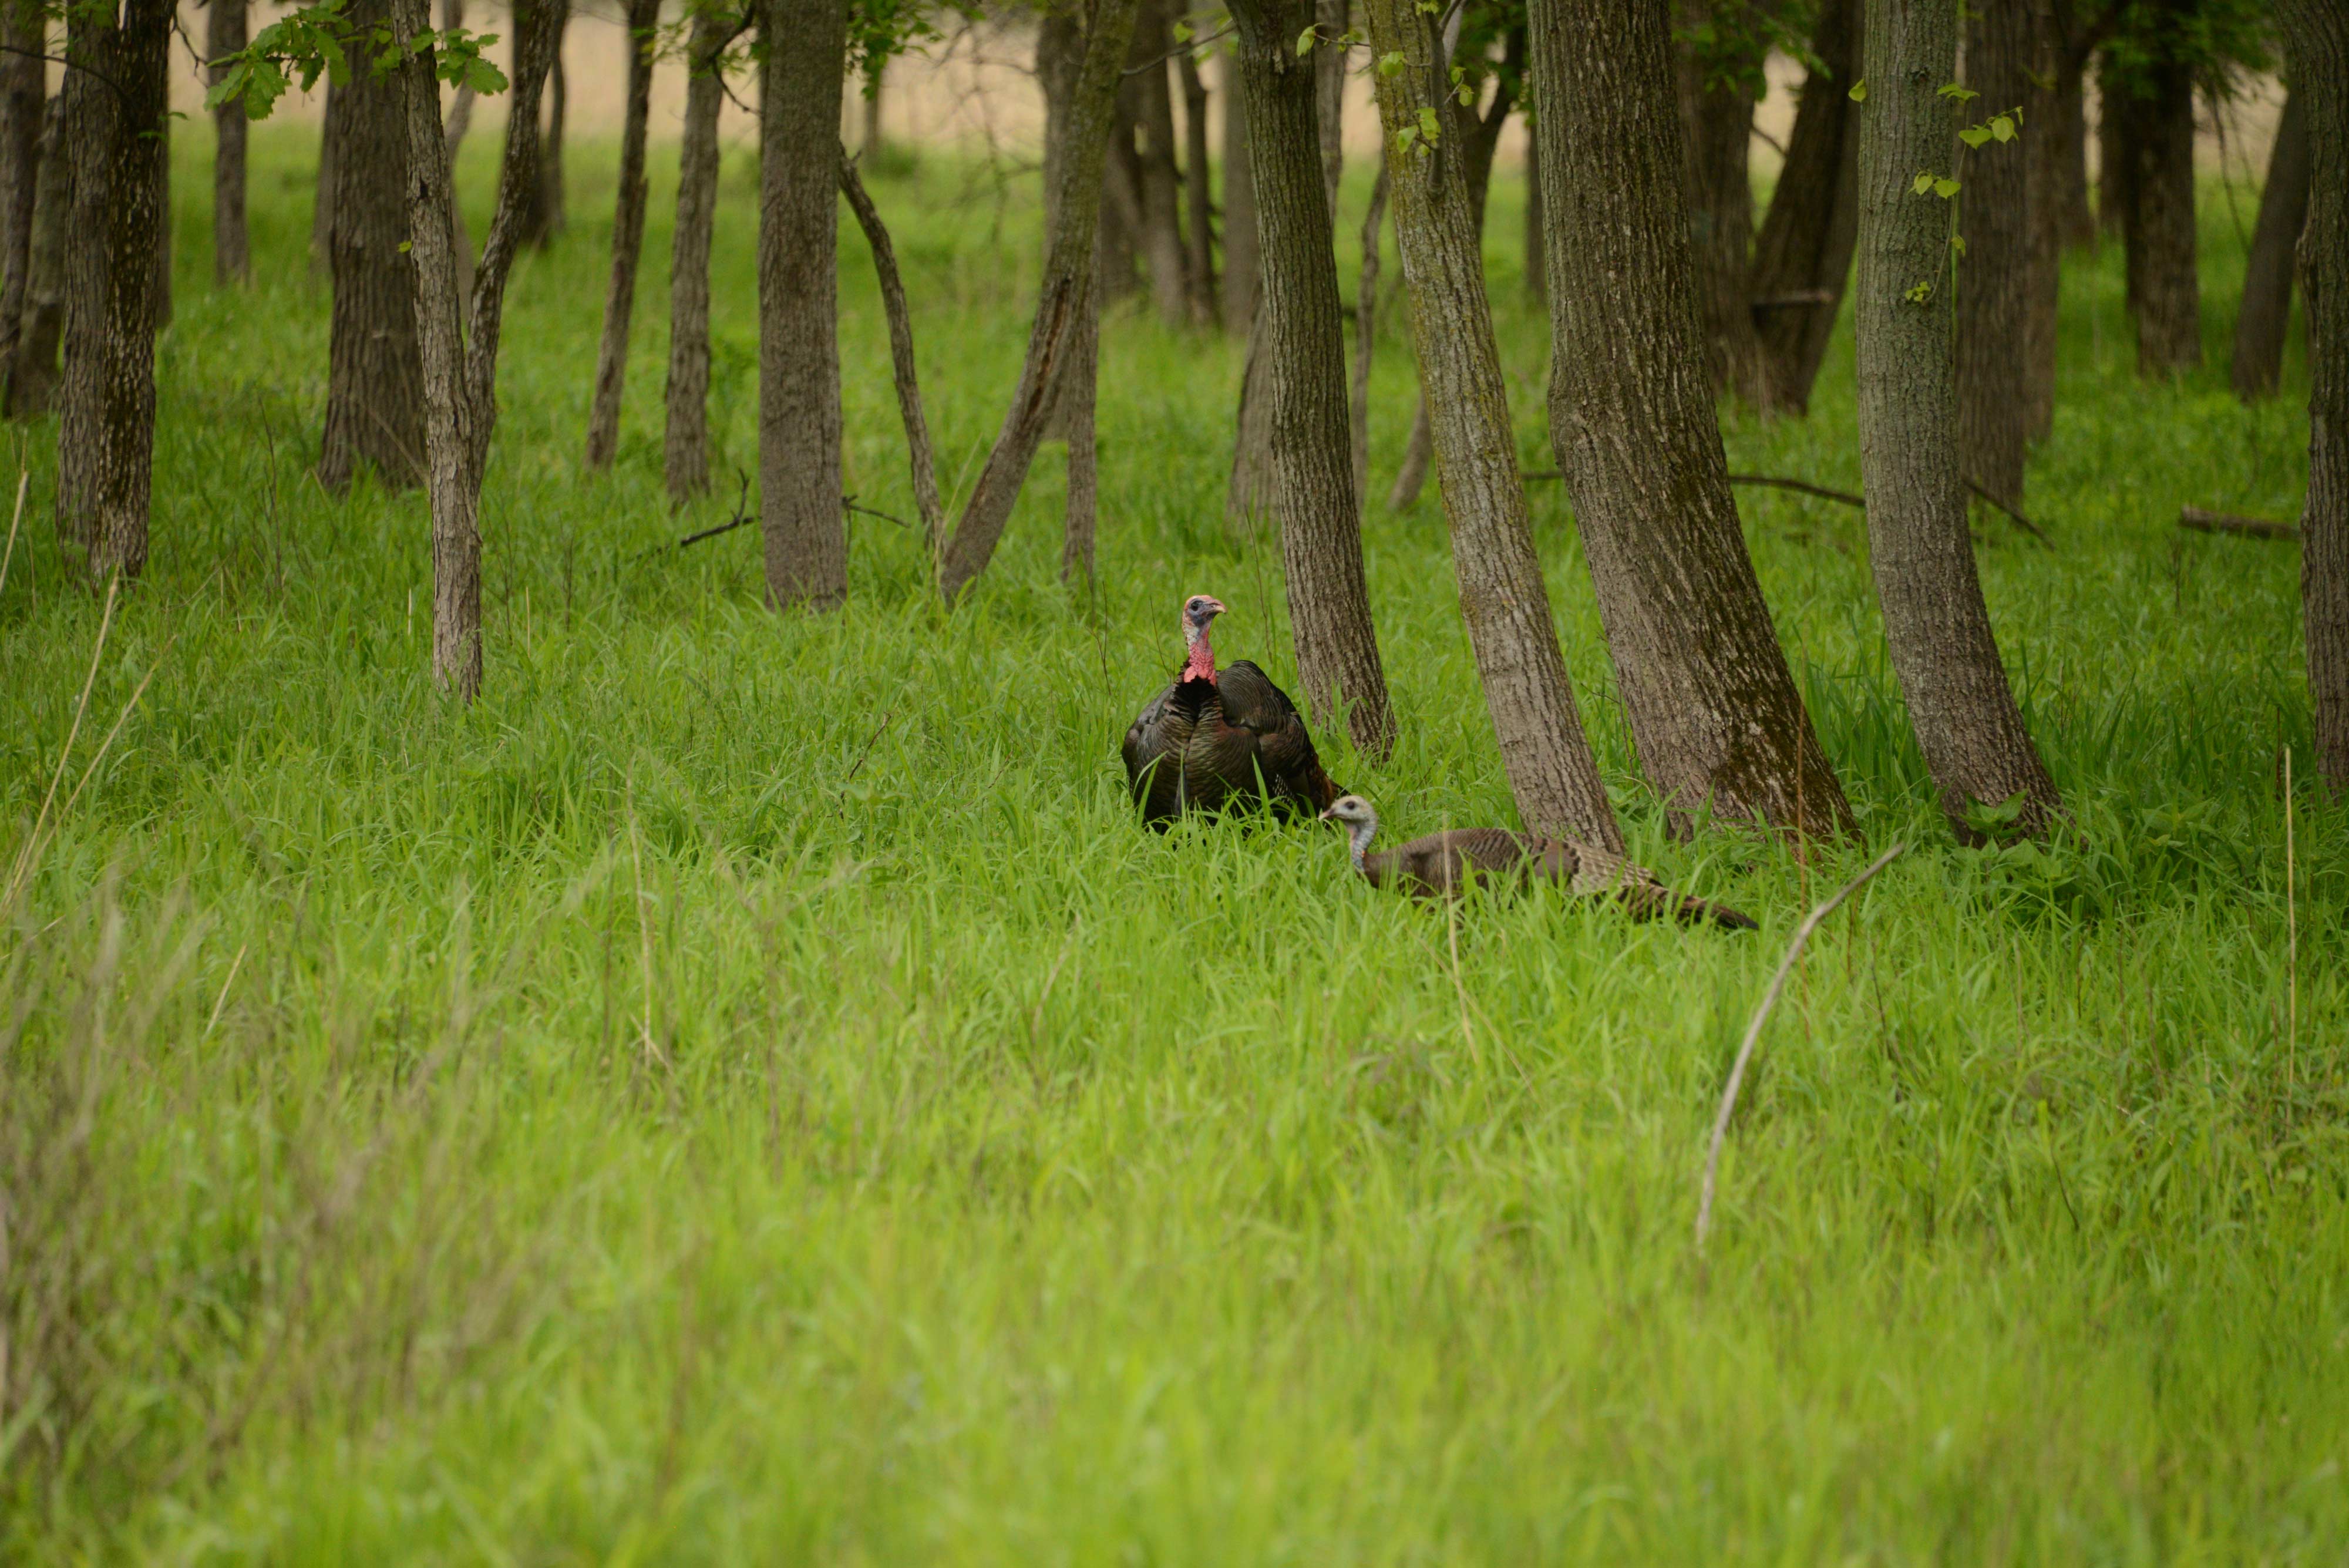 A wild turkey in a field.